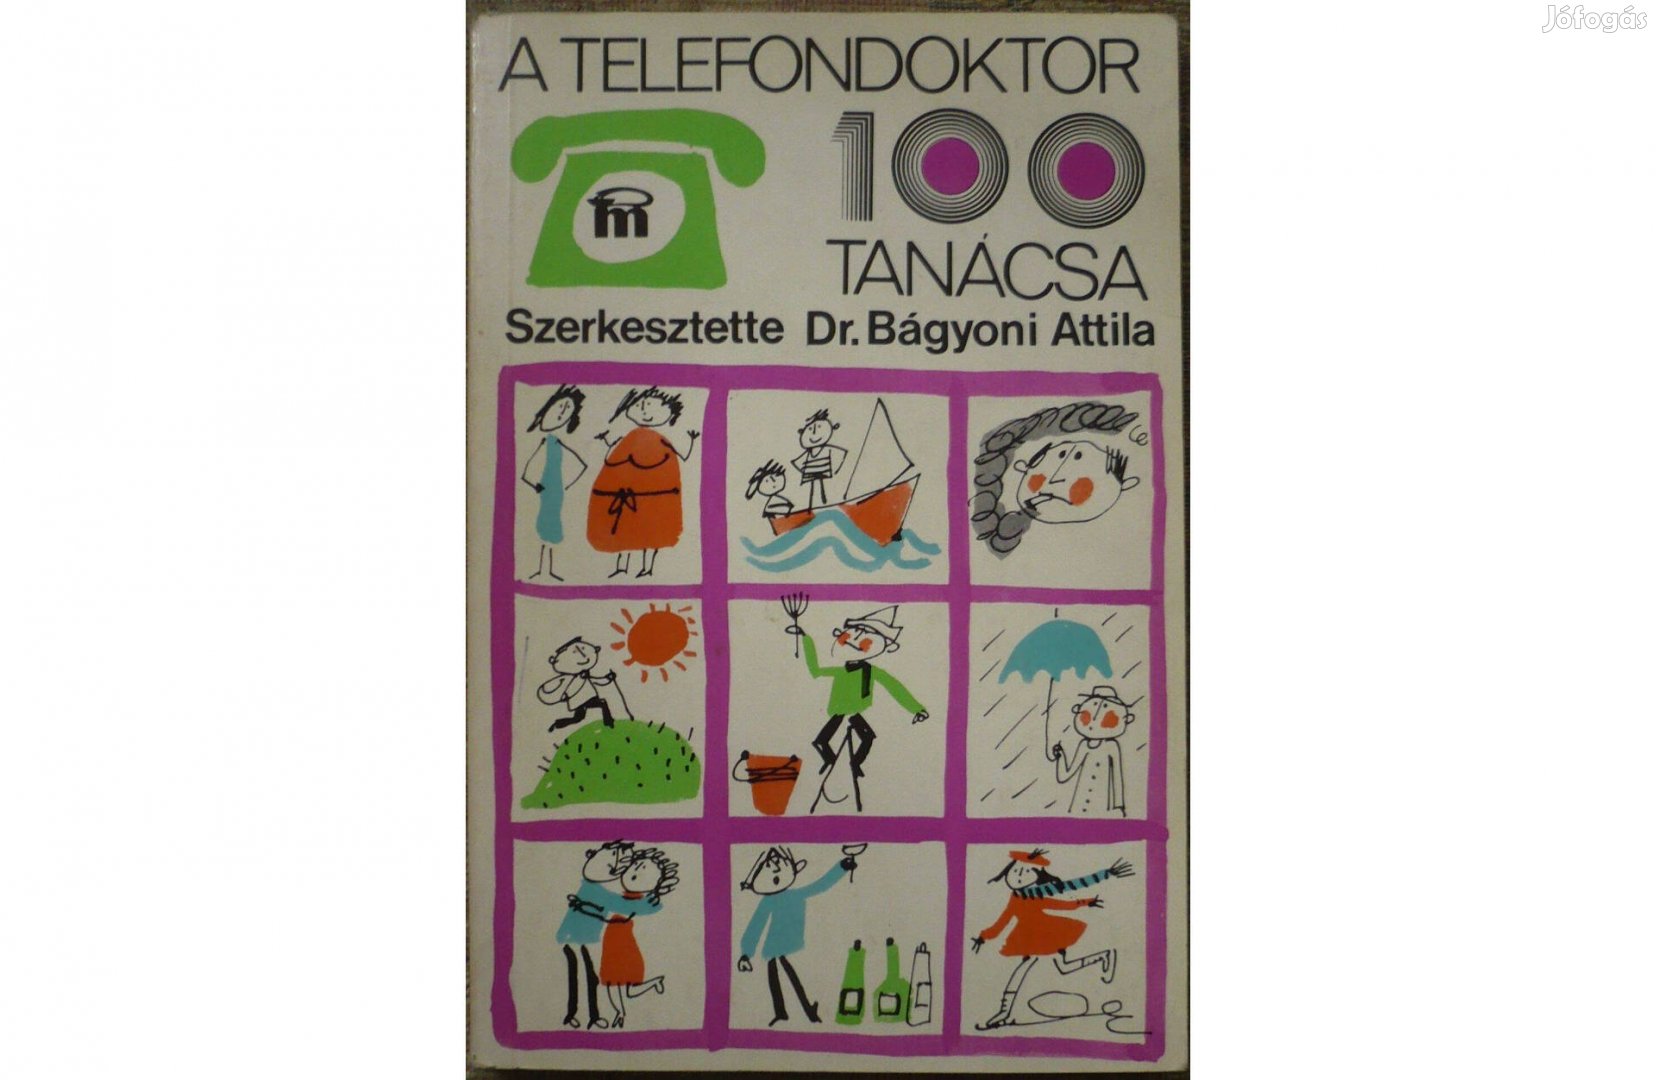 Dr. Bágyoni Attila: A telefondoktor 100 tanácsa